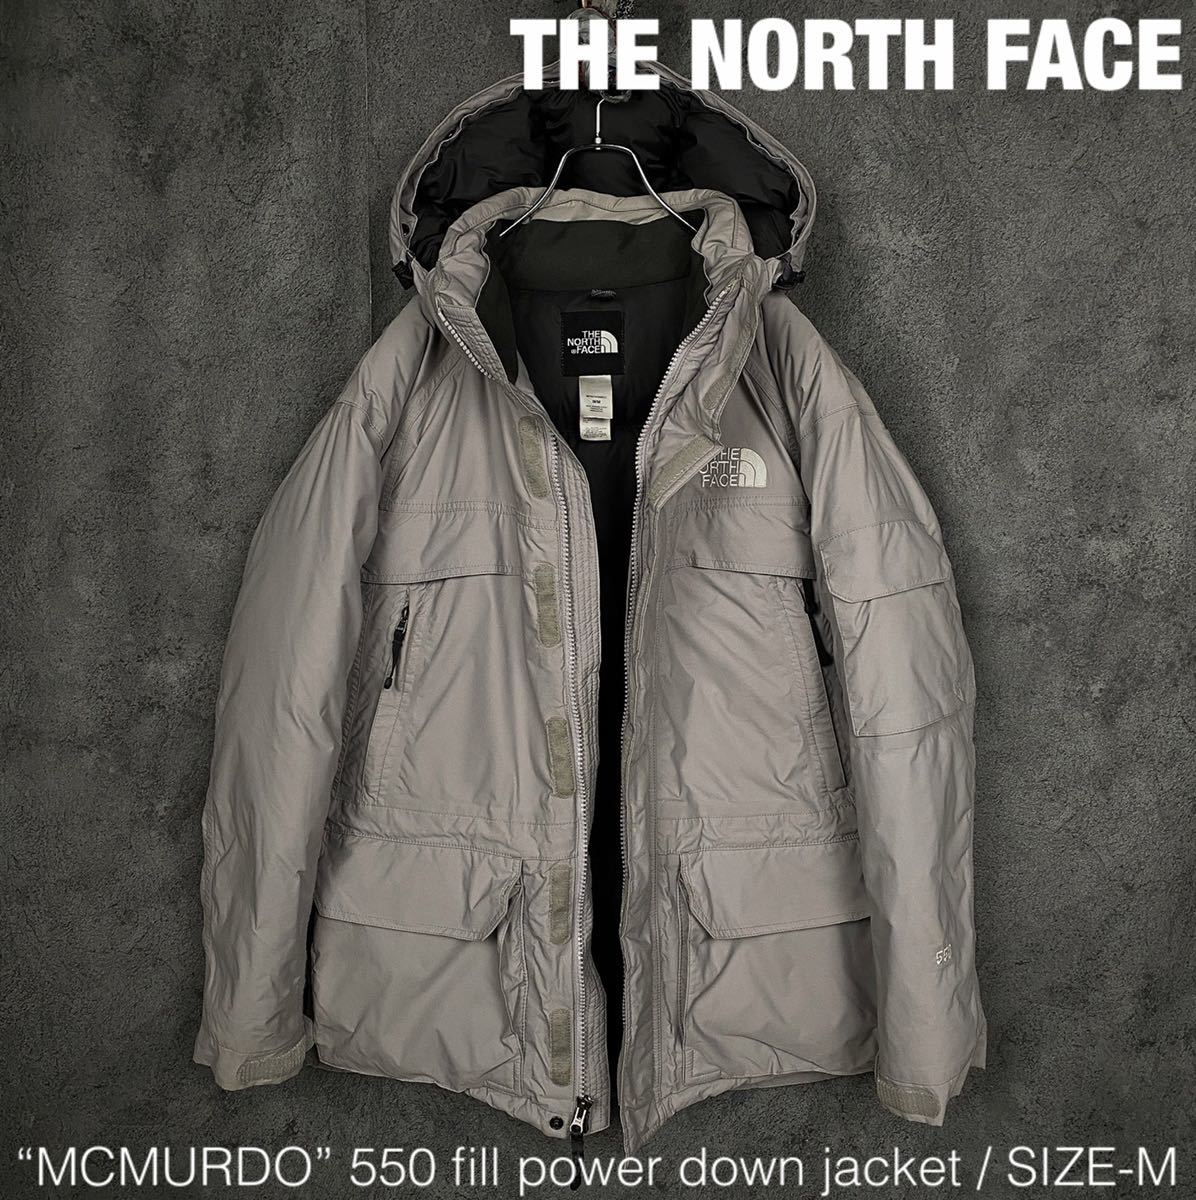 THE NORTH FACE マクマード 550 ダウンジャケット ザ ノースフェイス 90s 00s Y2K ビンテージ down jacket